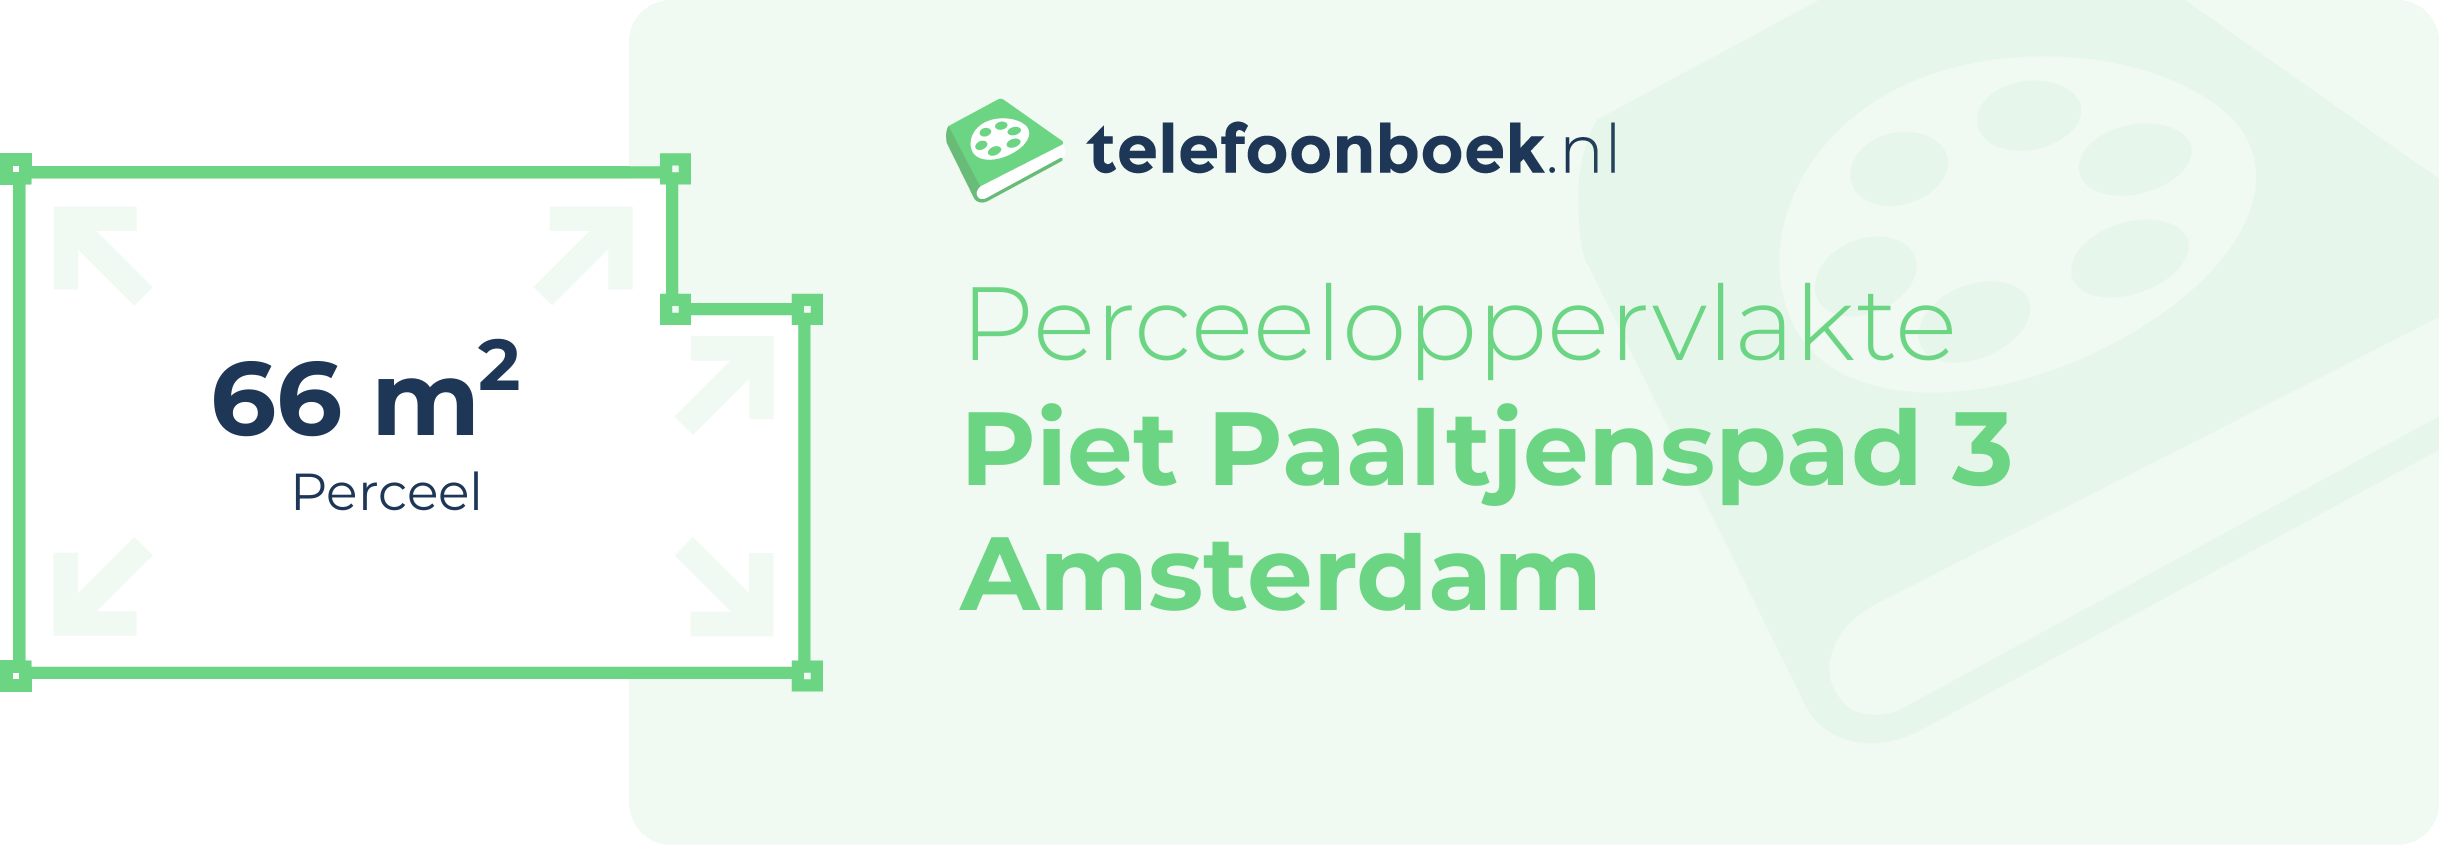 Perceeloppervlakte Piet Paaltjenspad 3 Amsterdam